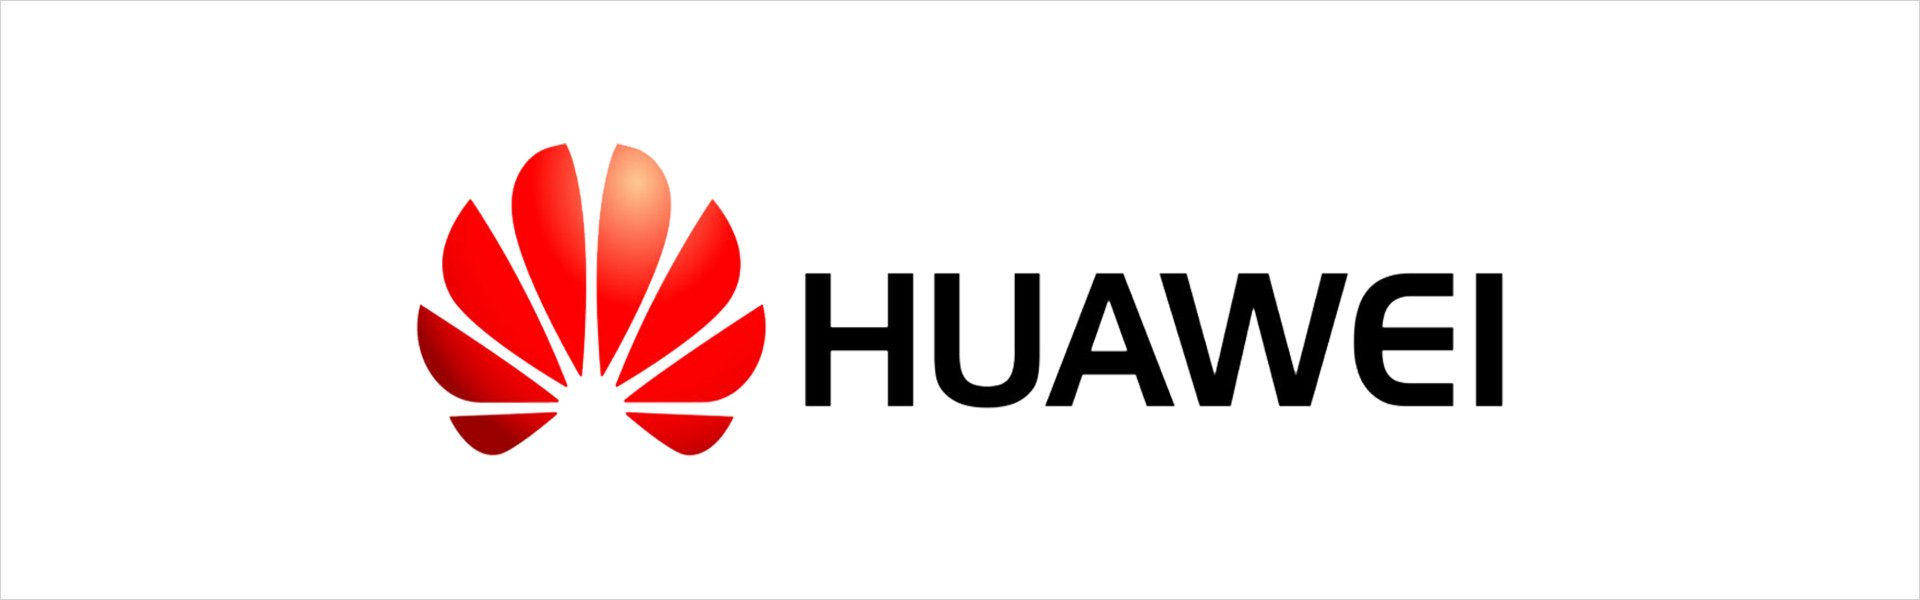 Huawei 51992848 Huawei